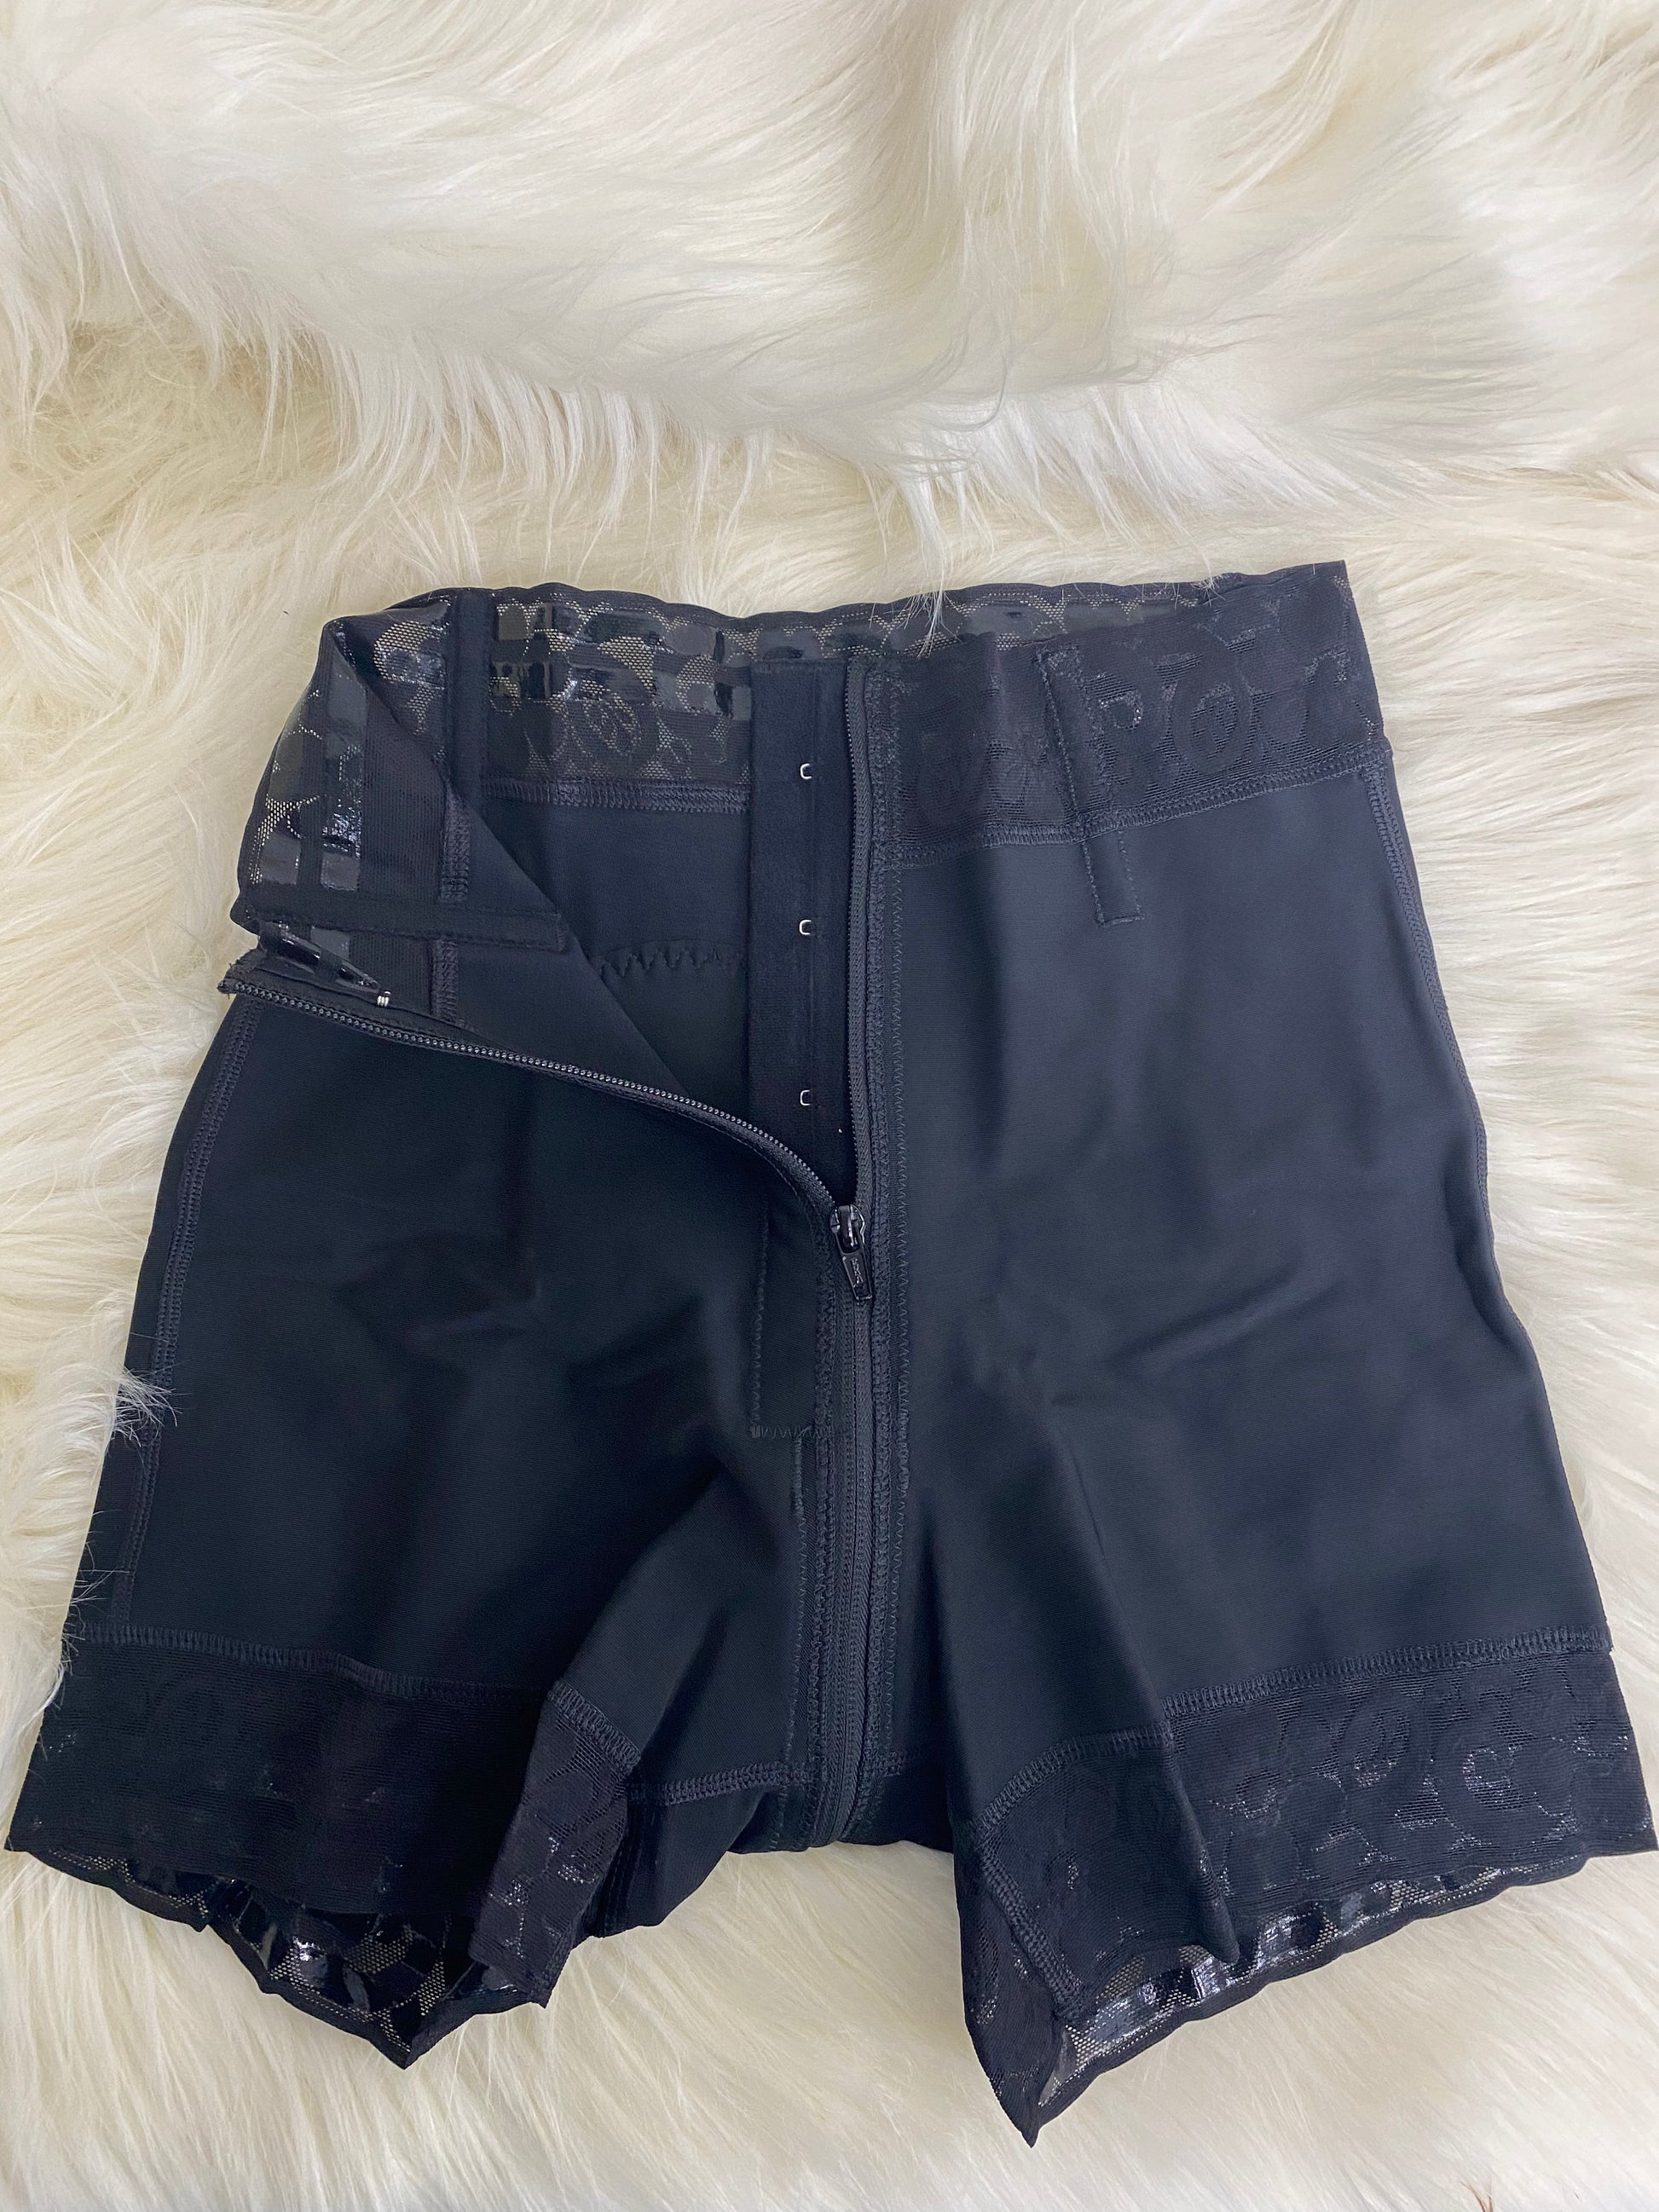 High Waisted Zipper Butt Lifting Shorts 3722 – Cali Curves